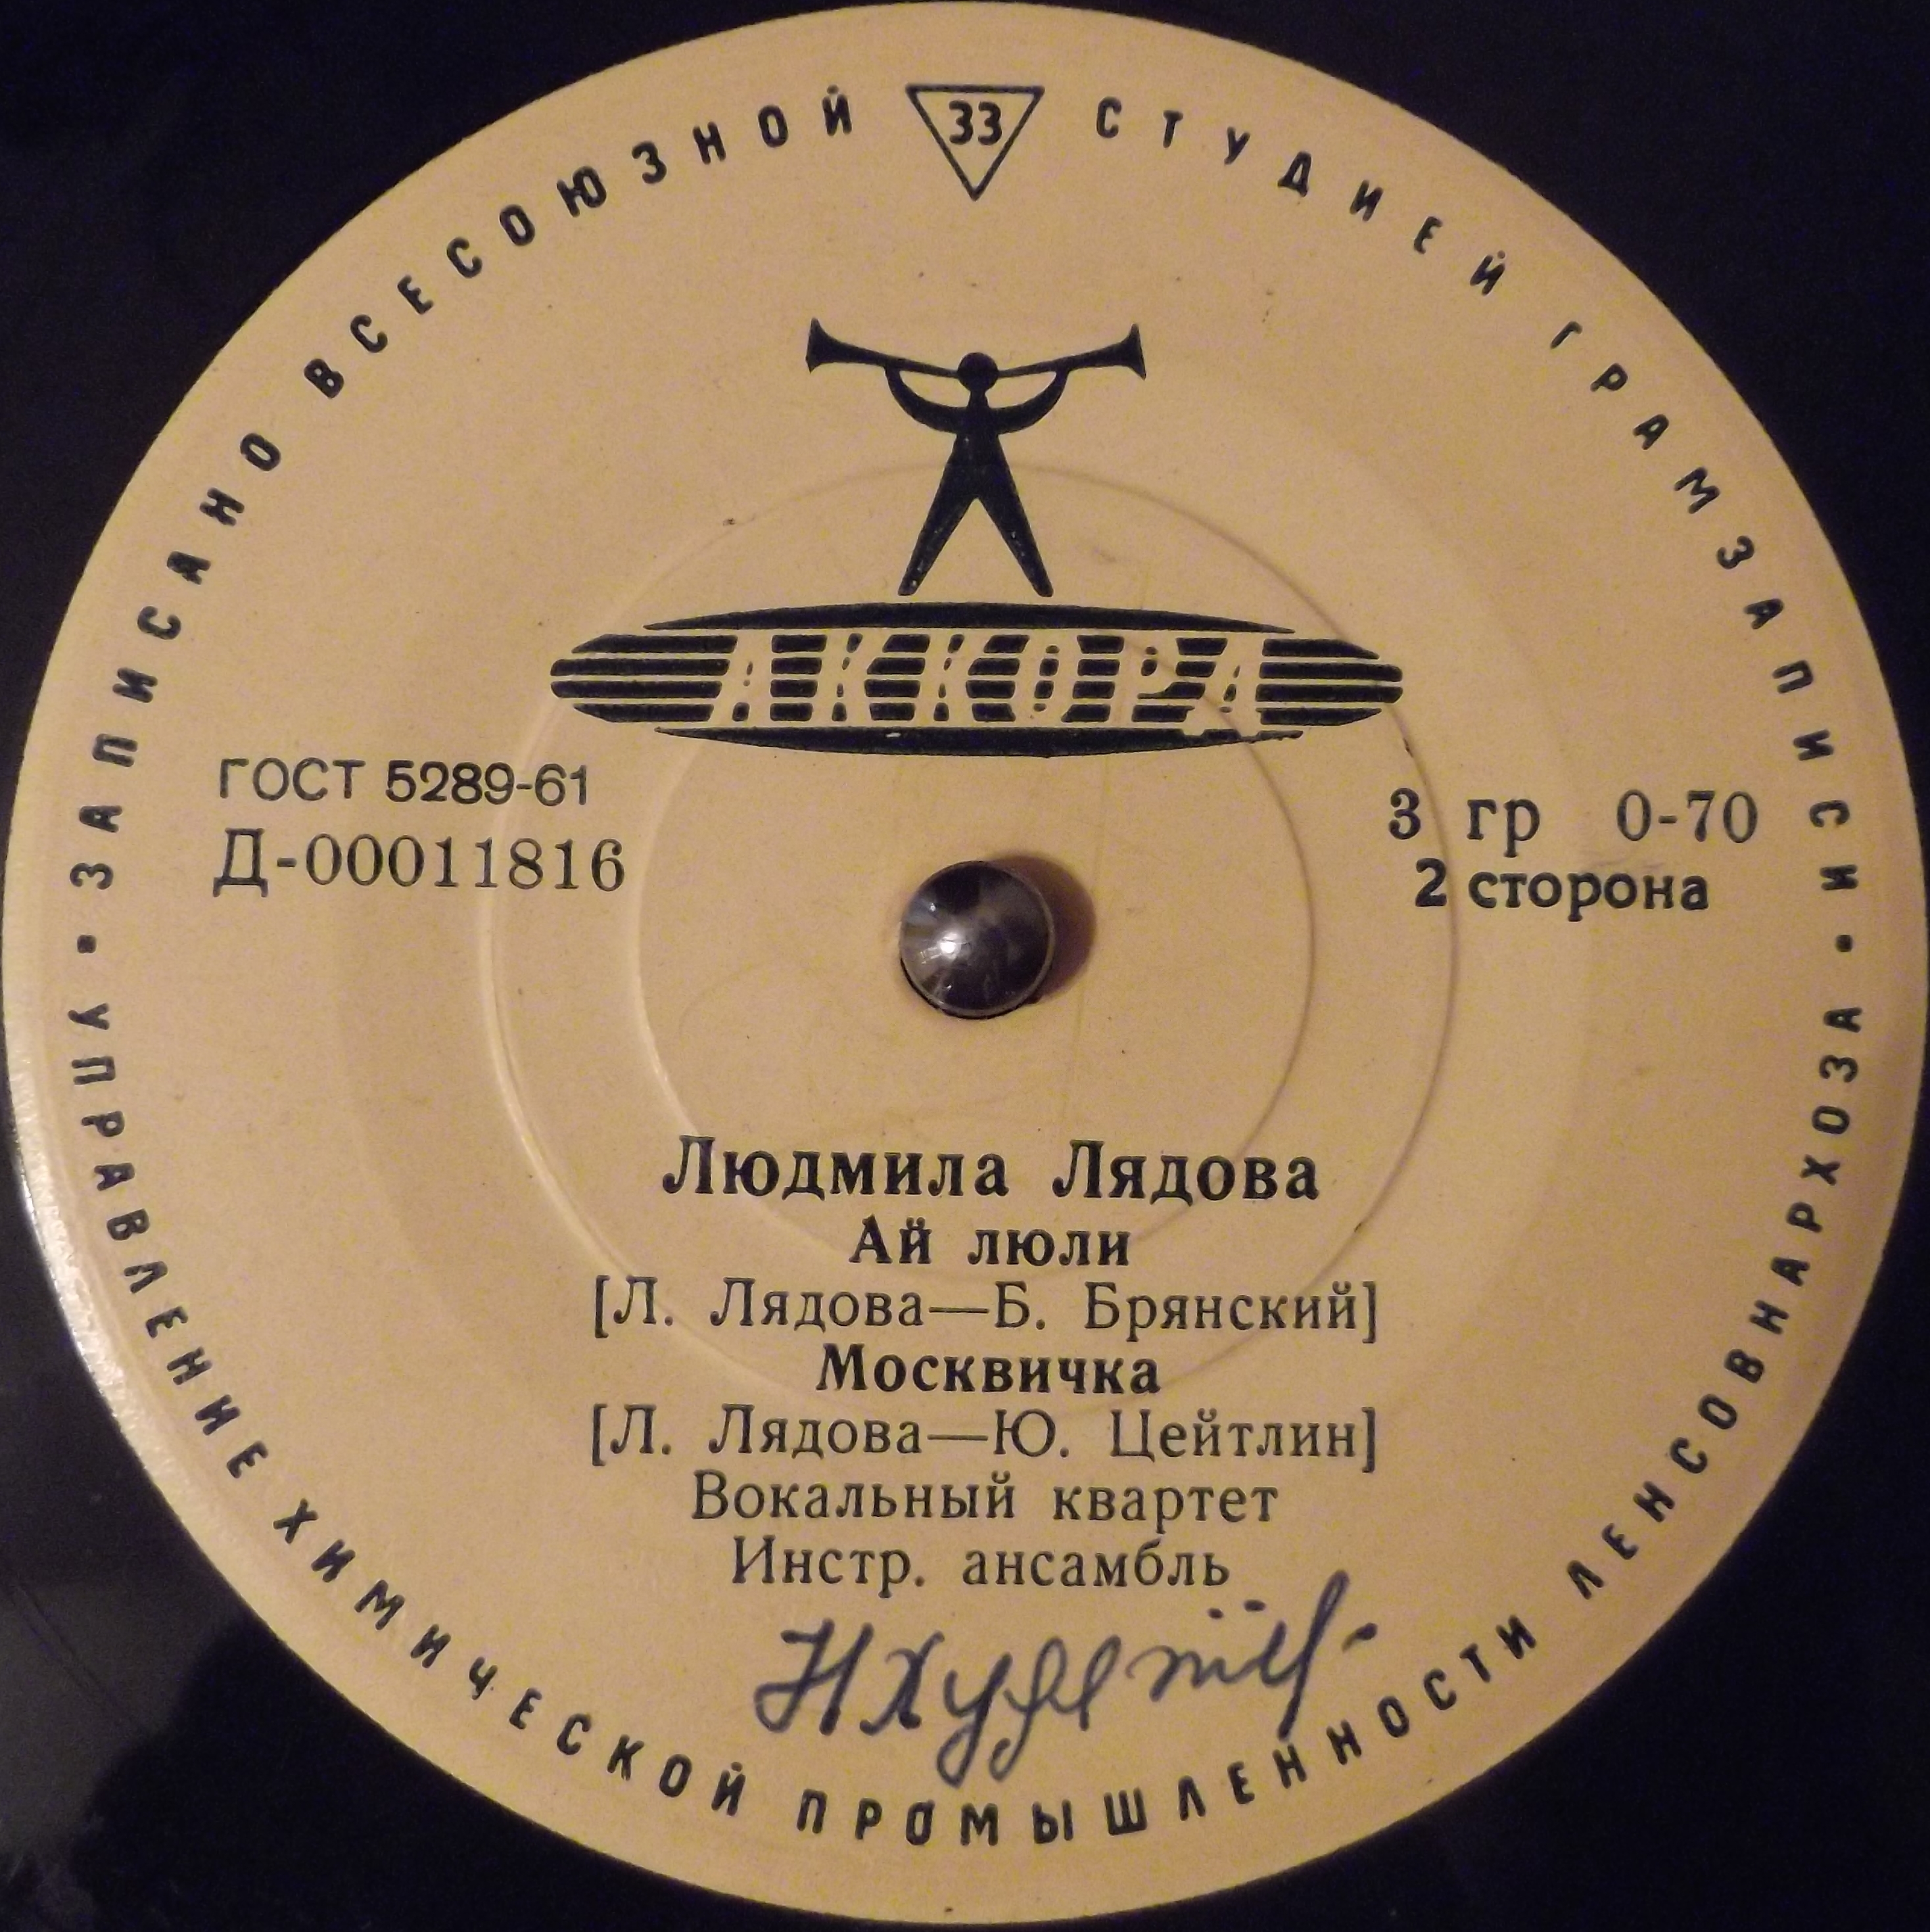 Л. ЛЯДОВА (1925) - Песни